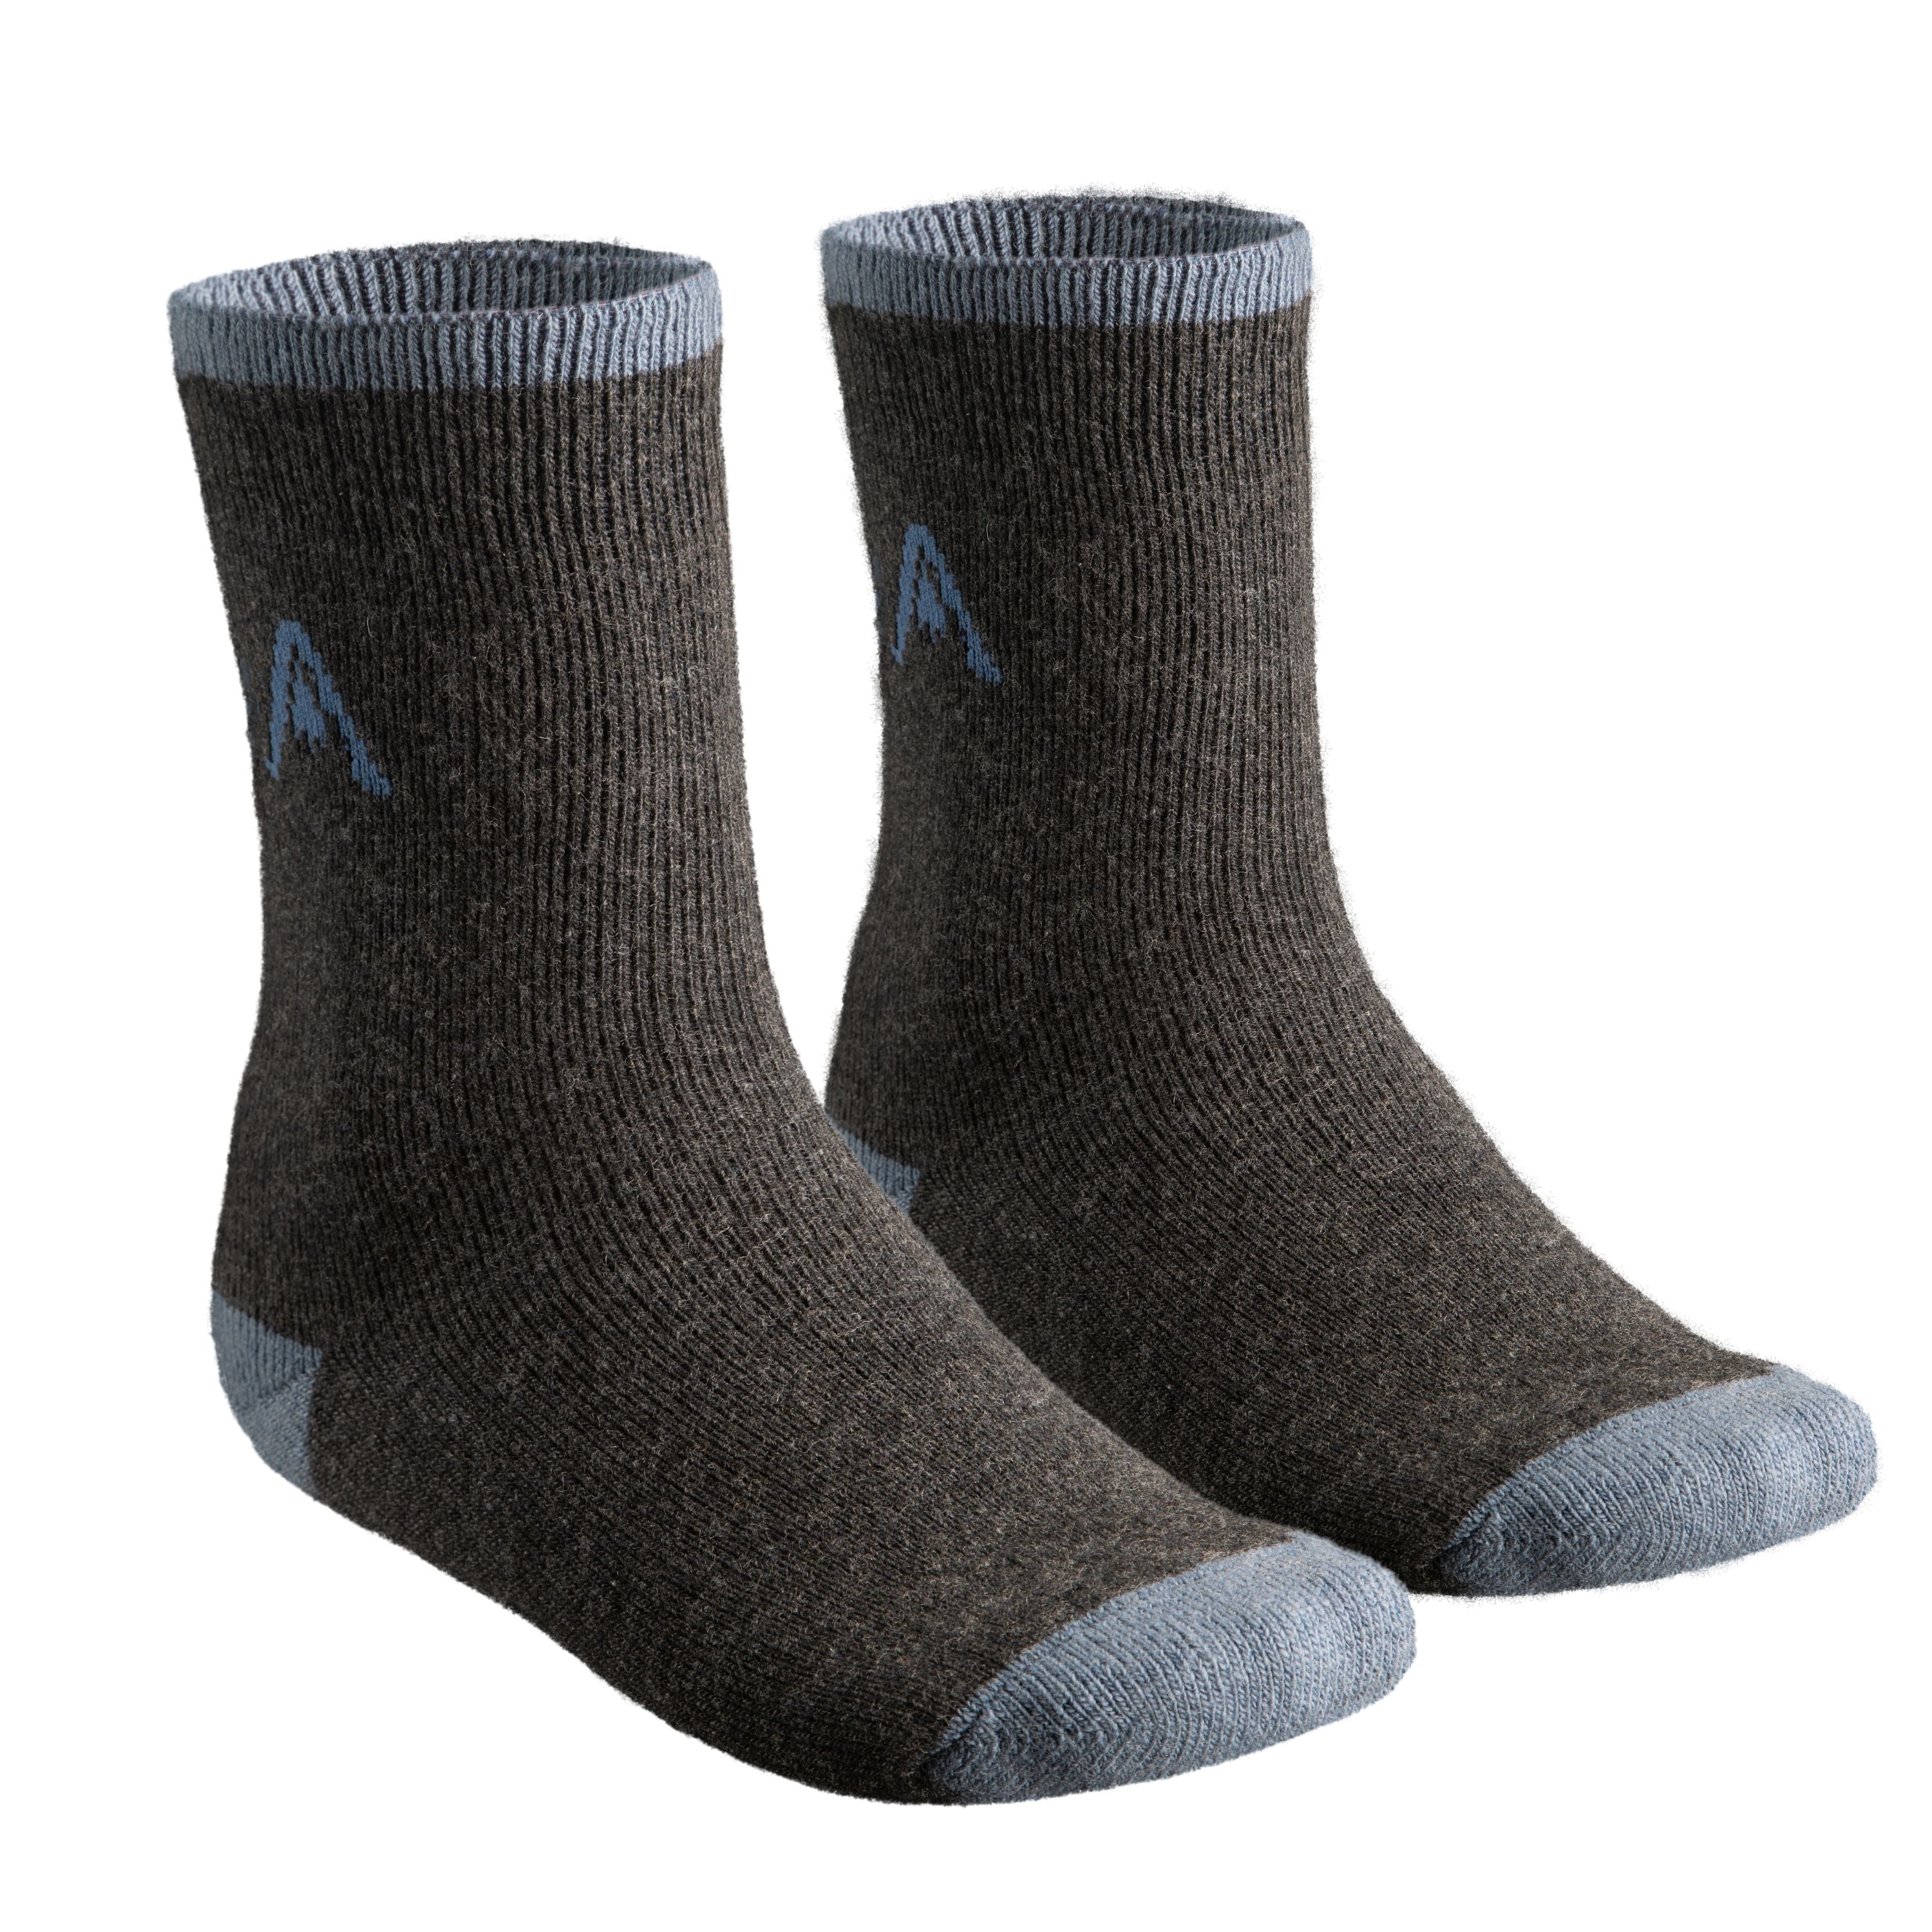 "Bregenz" socks - Unisex - 2 pairs/pkg